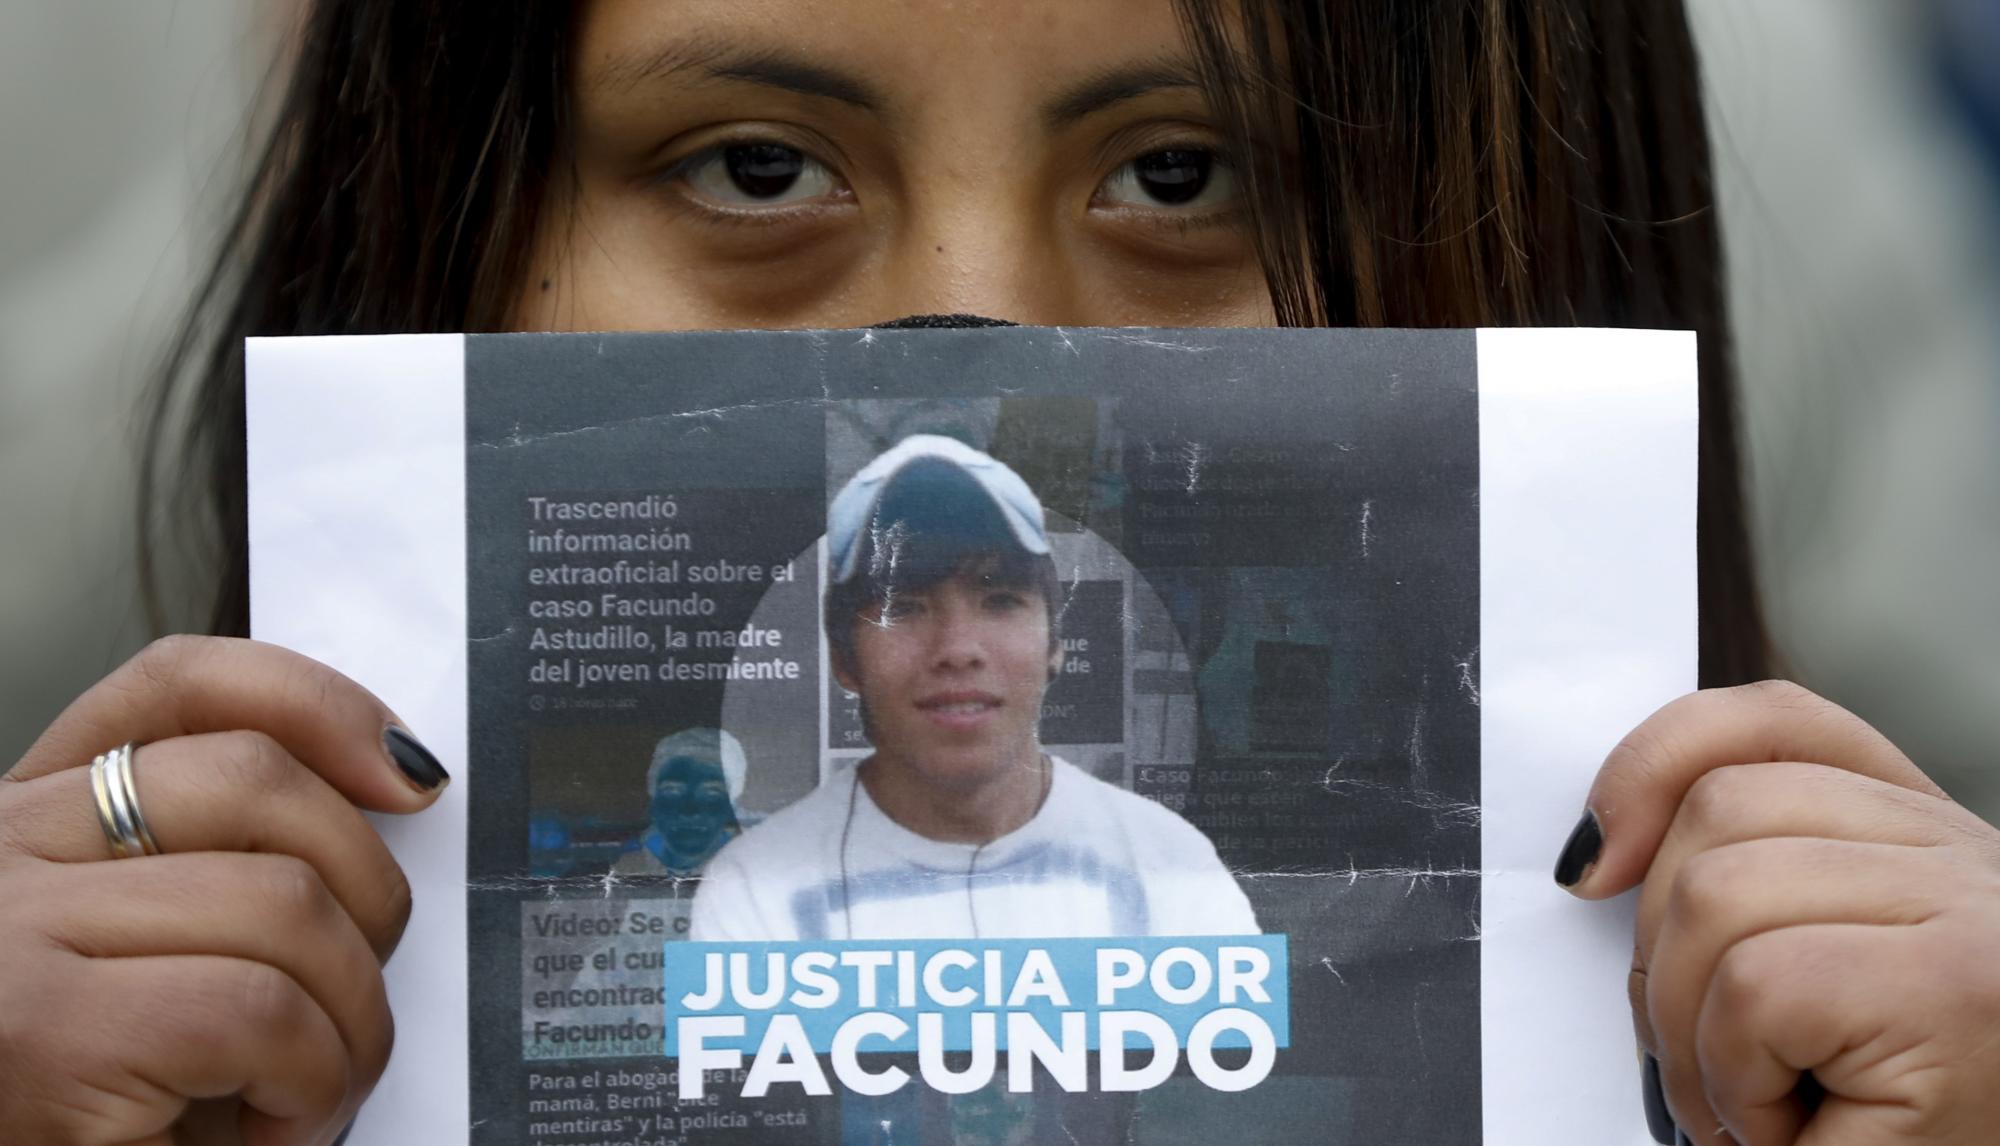 La muerte de un joven en Argentina ha levantado una serie de protestas que claman por justicia. La policía de Buenos Aires pudiera estar implicada en la muerte de Facundo Astudillo (AP Photo/Natacha Pisarenko)